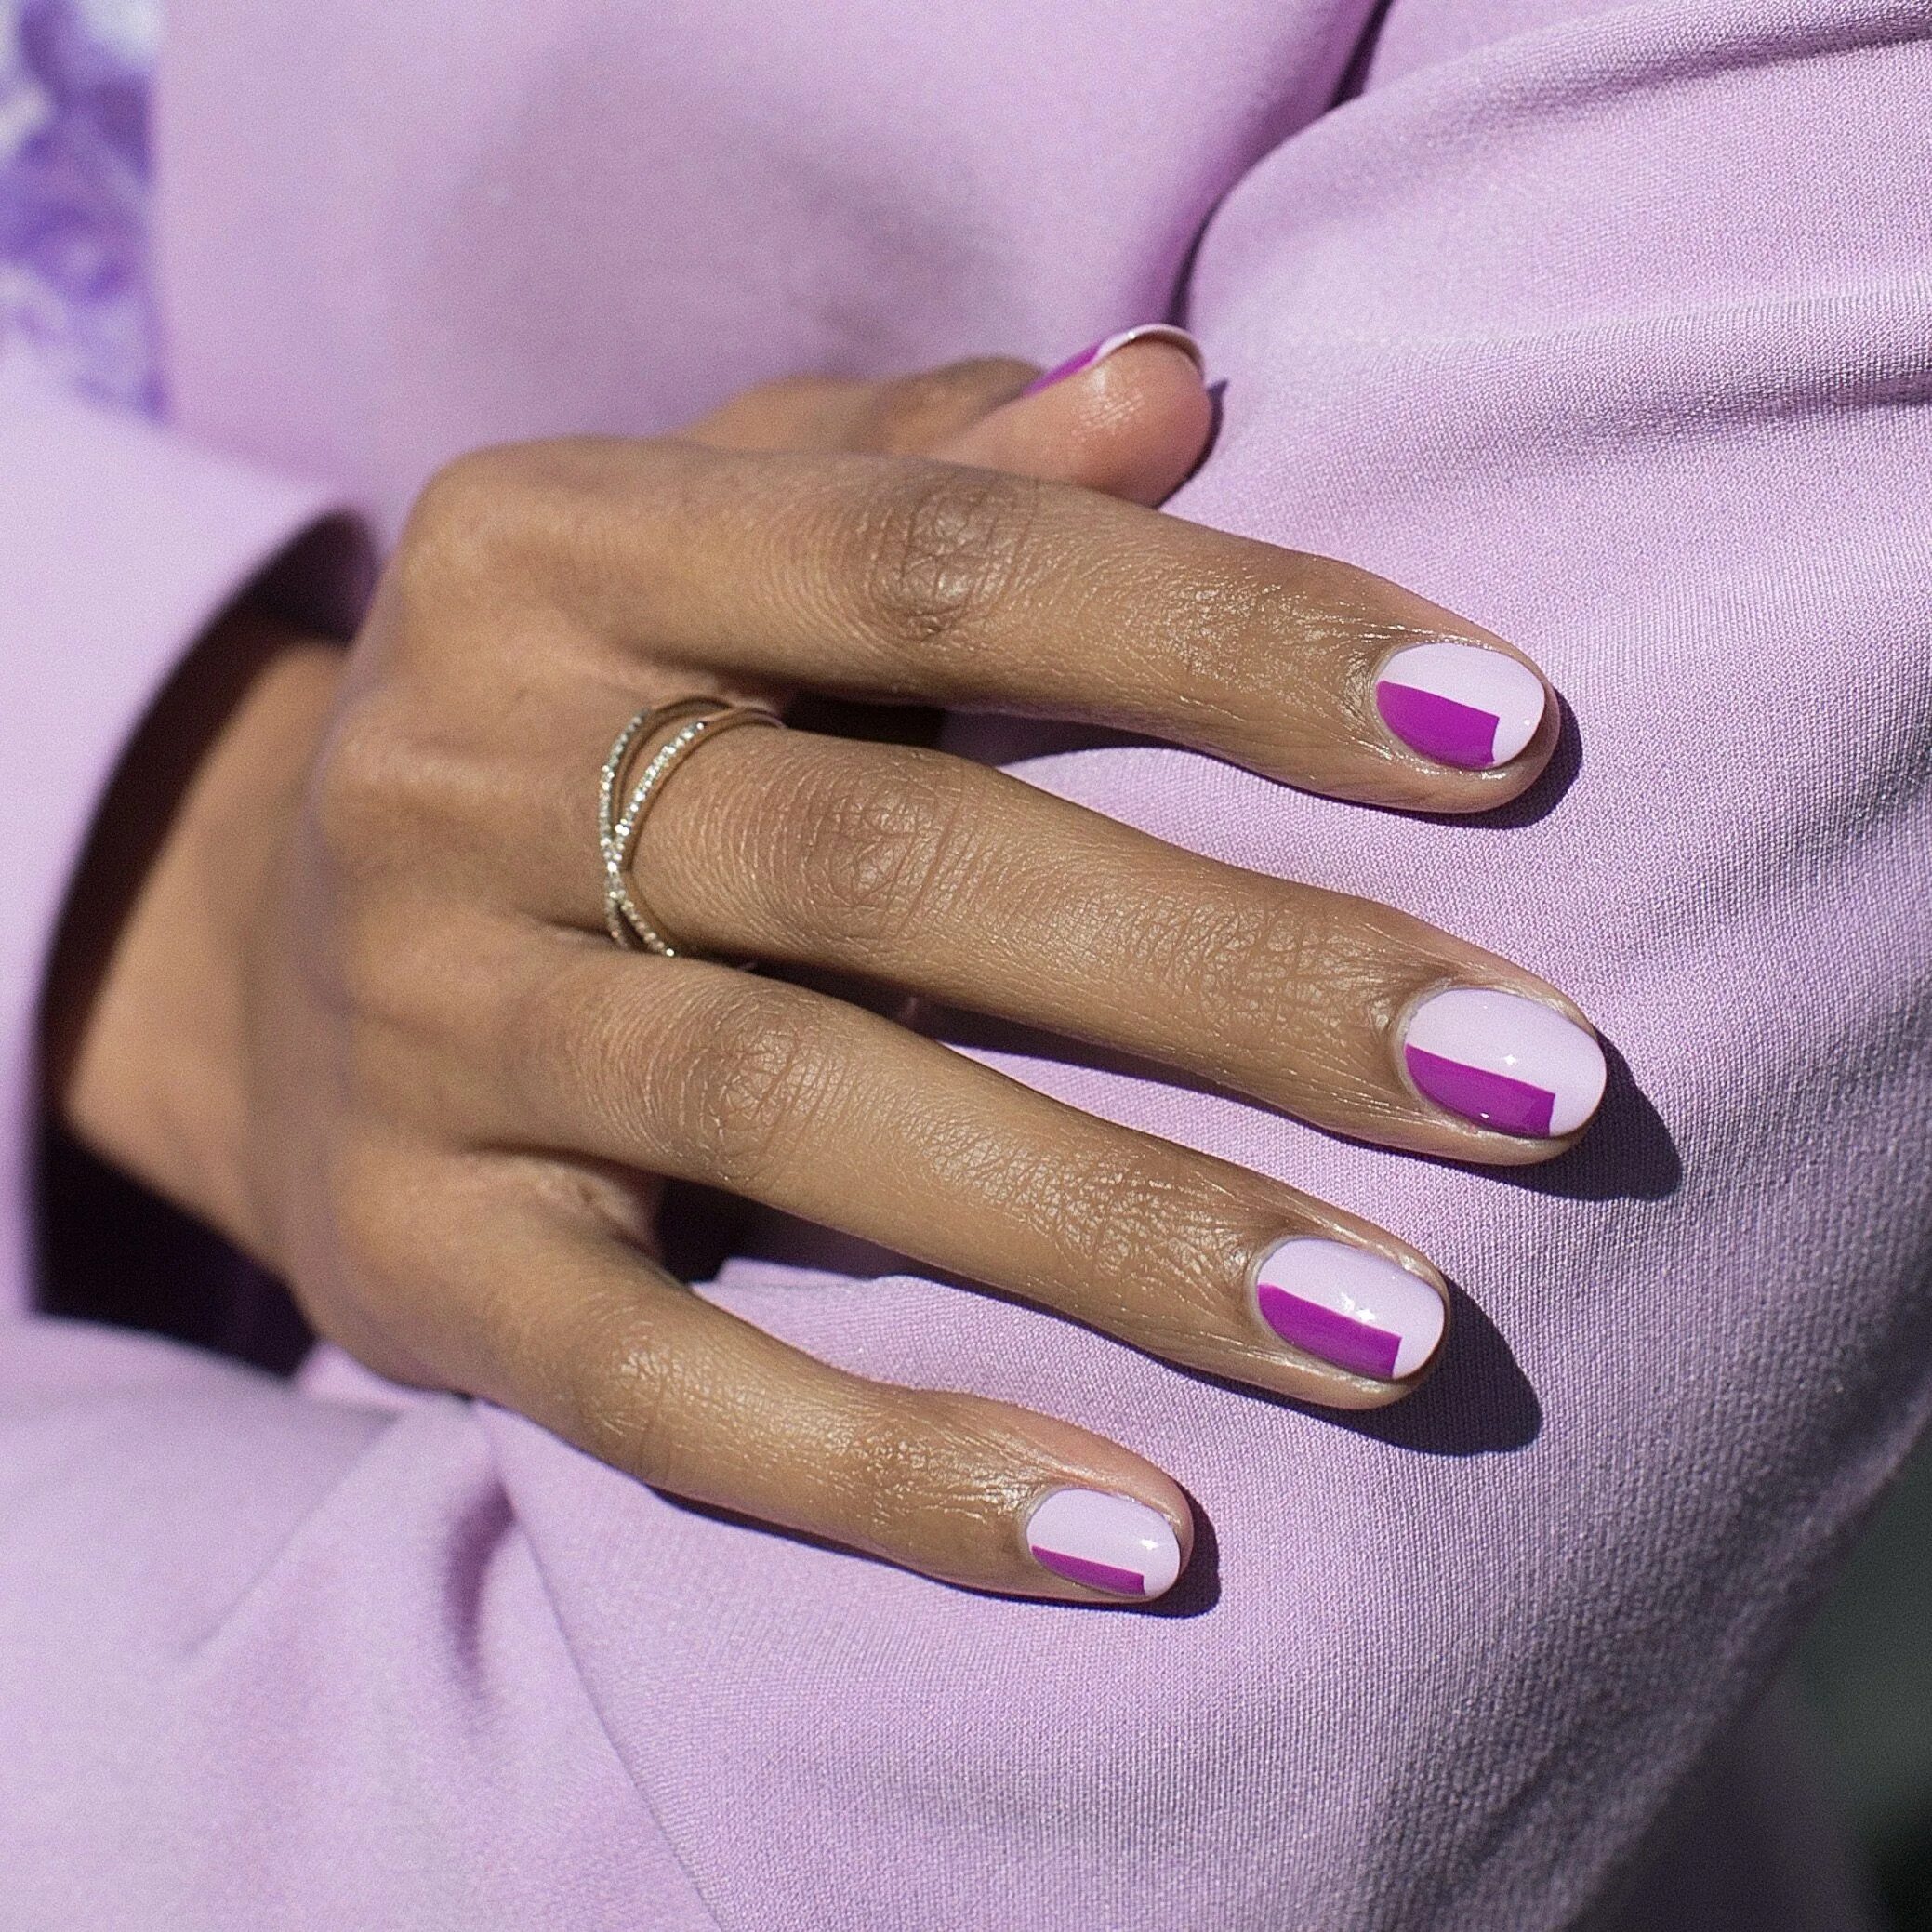 Ногти актуальные цвета. Ярко фиолетовый маникюр. Лиловые ногти. Ногти фиолетового цвета. Красивые цвета для маникюра.